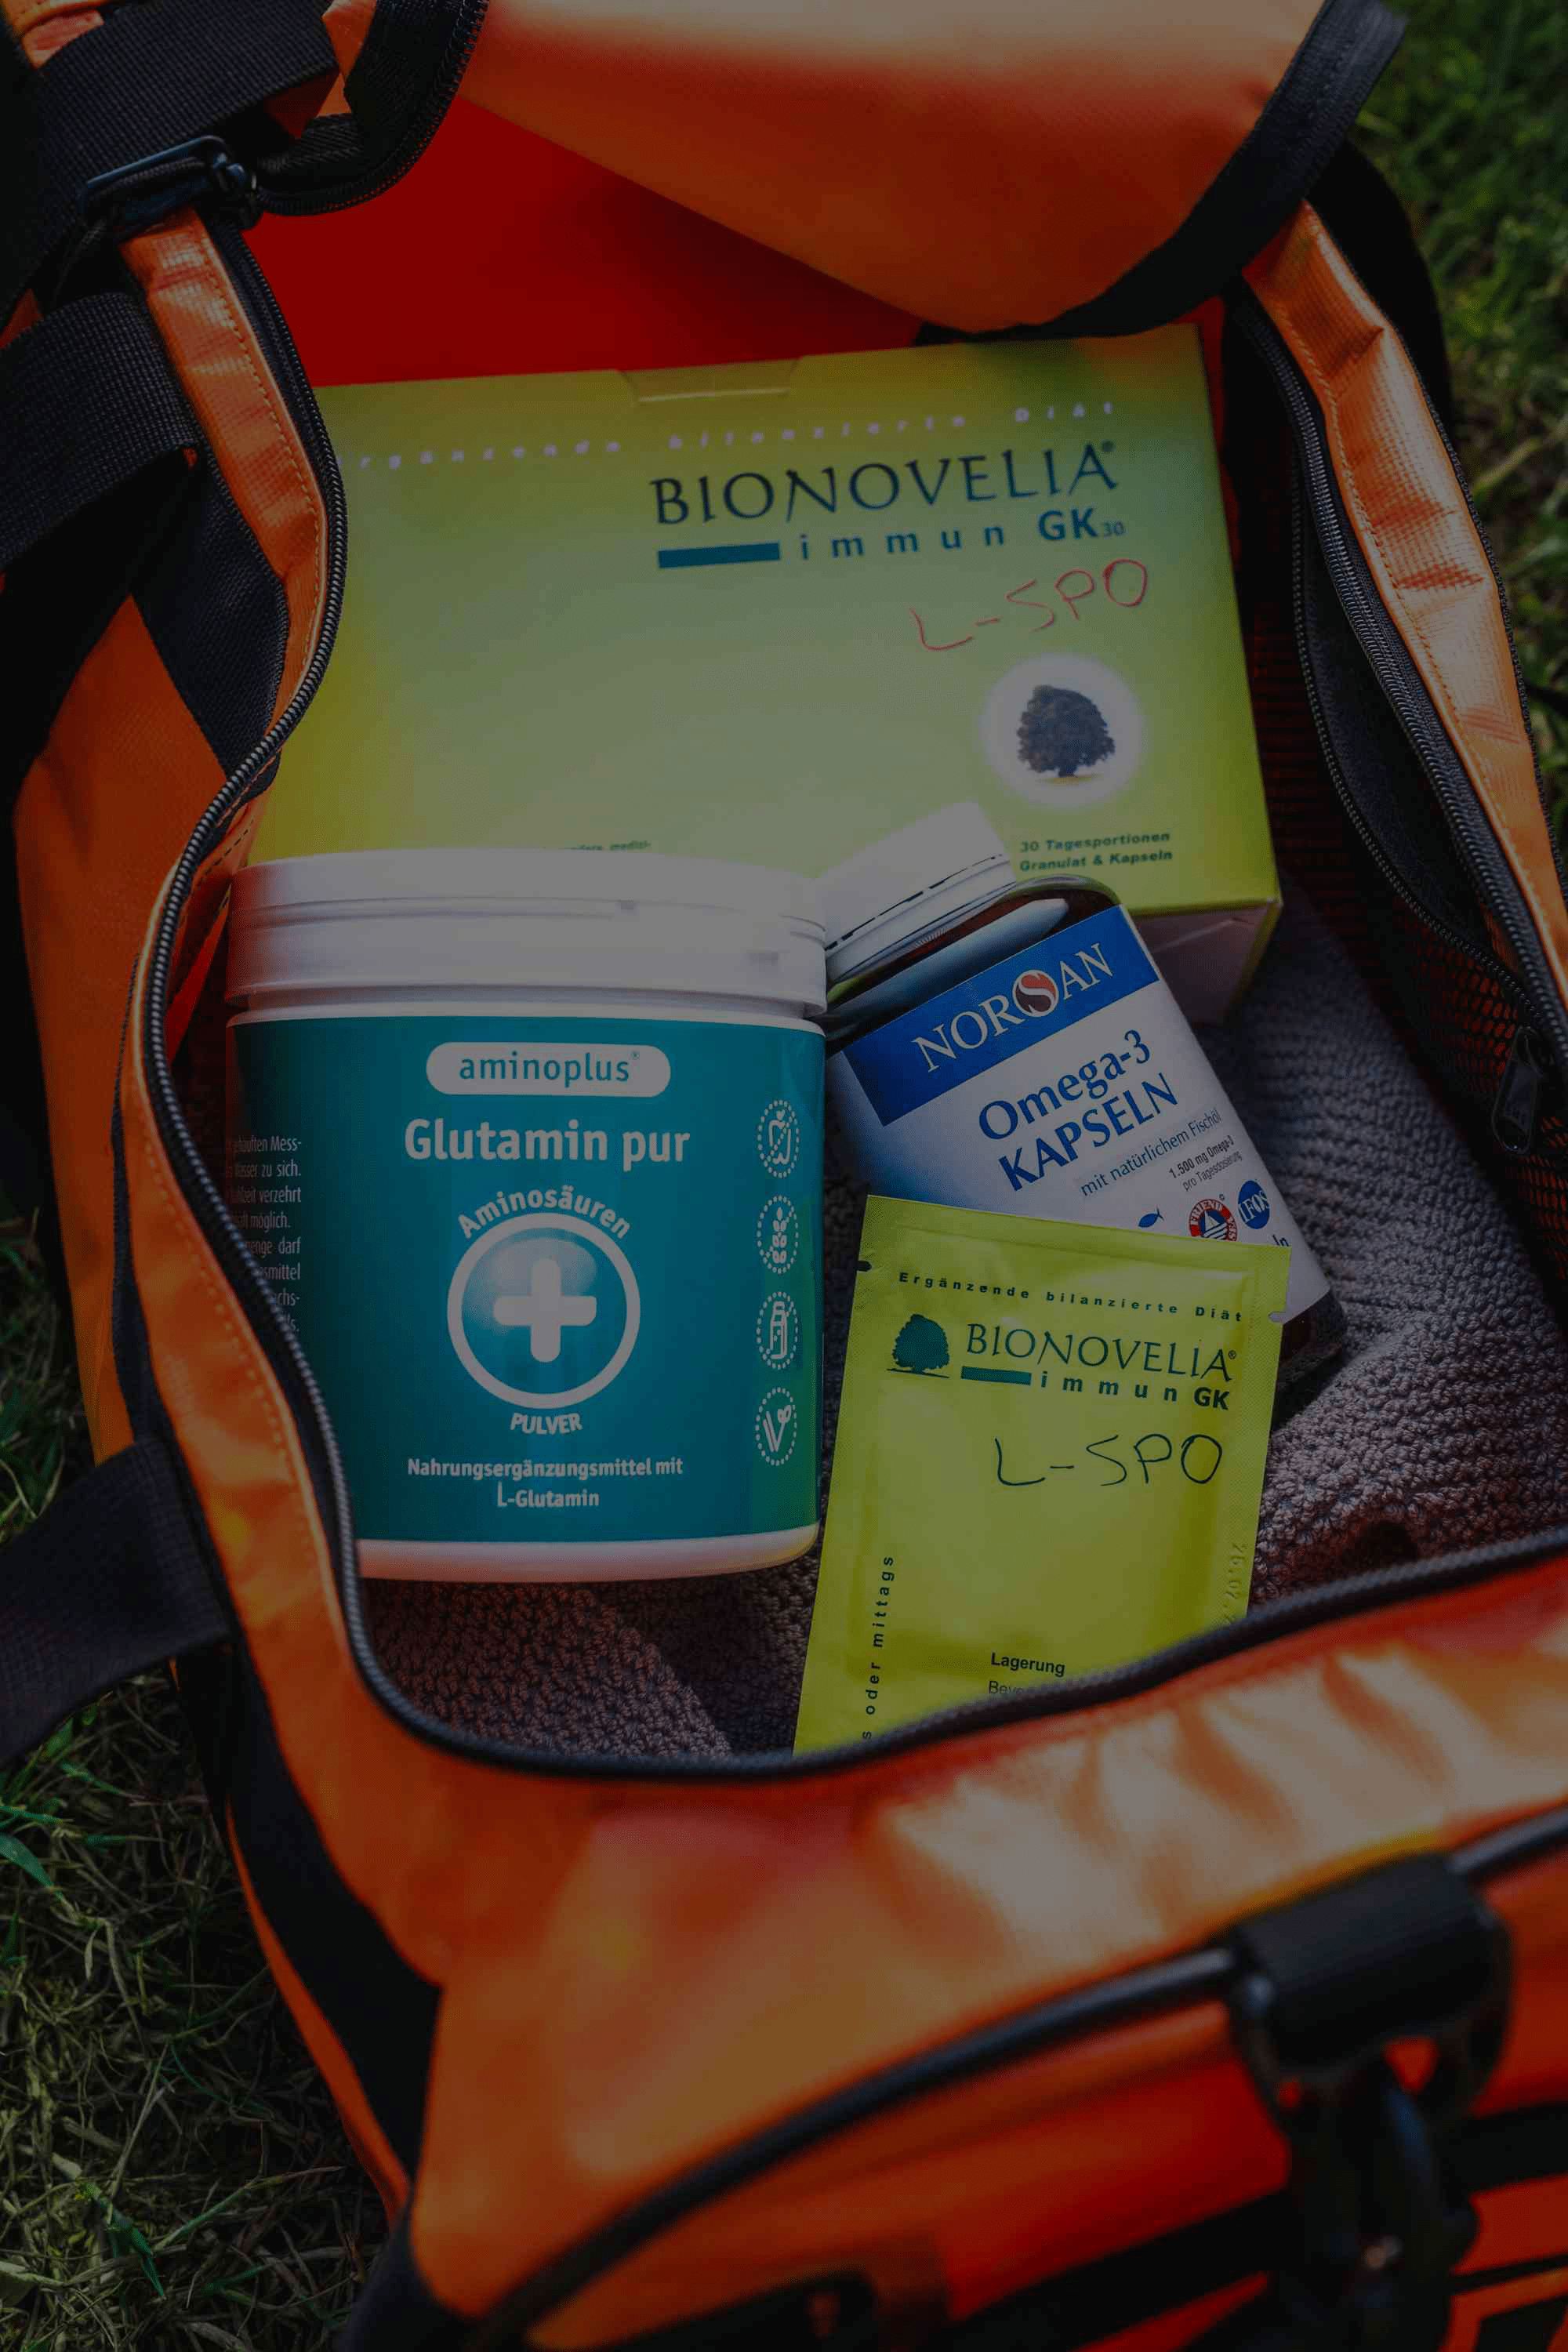 Sporttasche mit Bionovelia, Glutamin und Omega 3